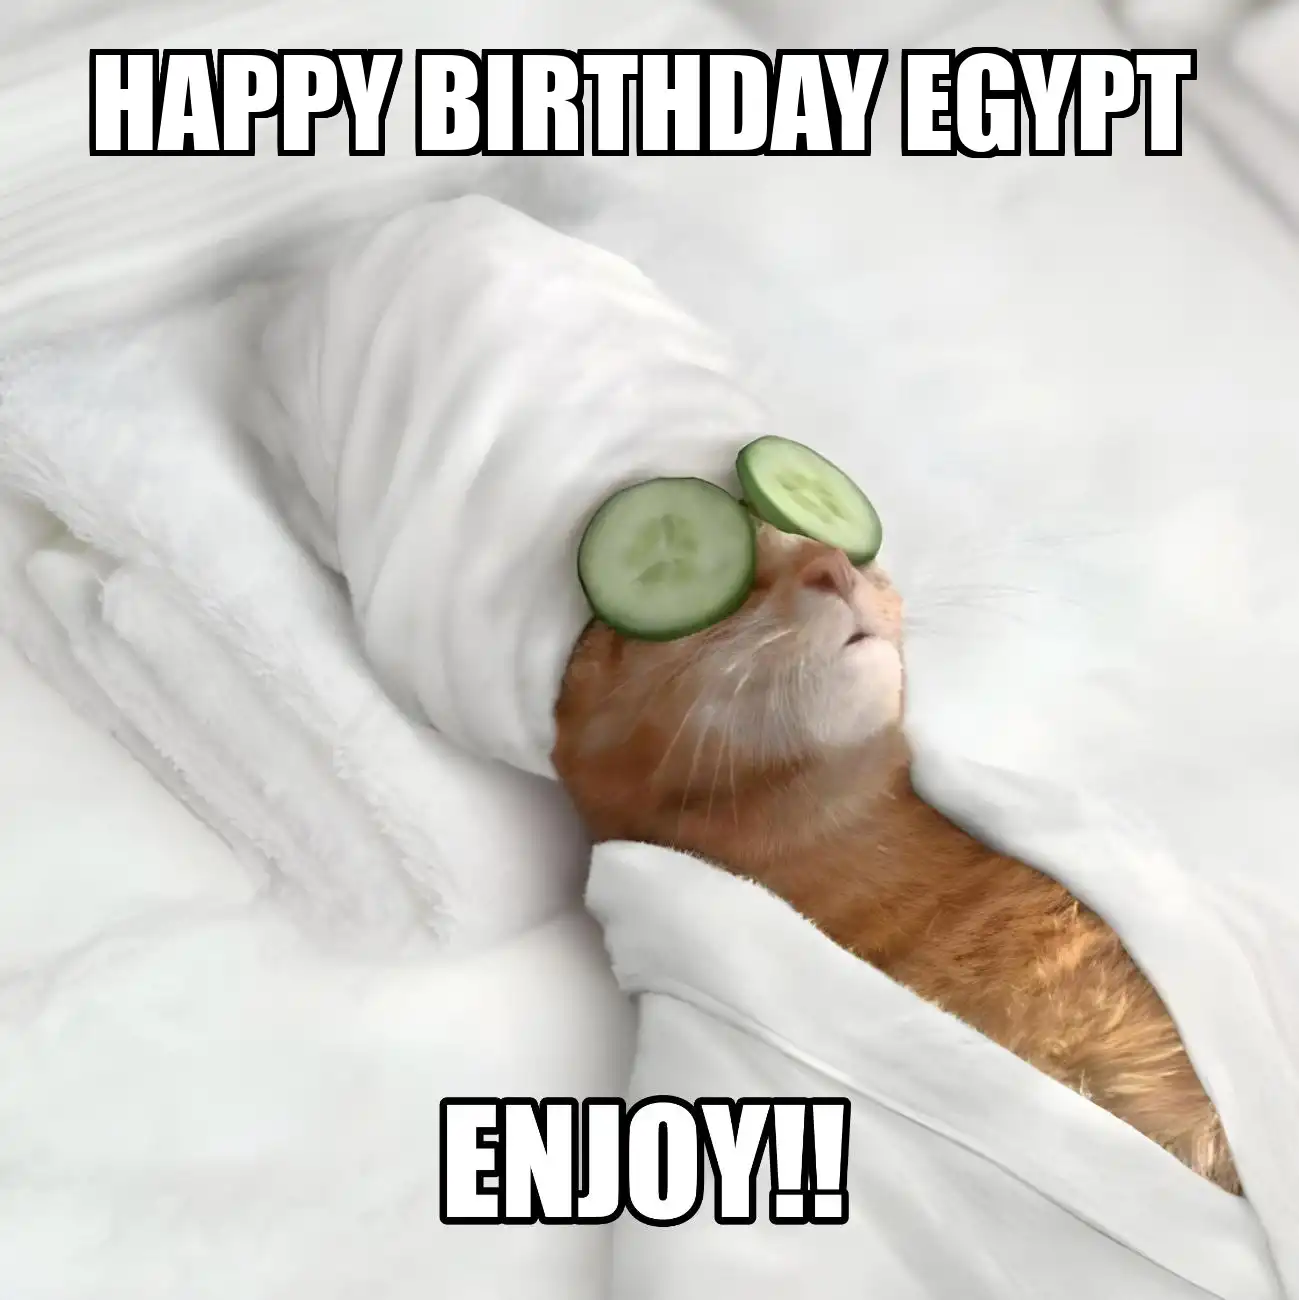 Happy Birthday Egypt Enjoy Cat Meme